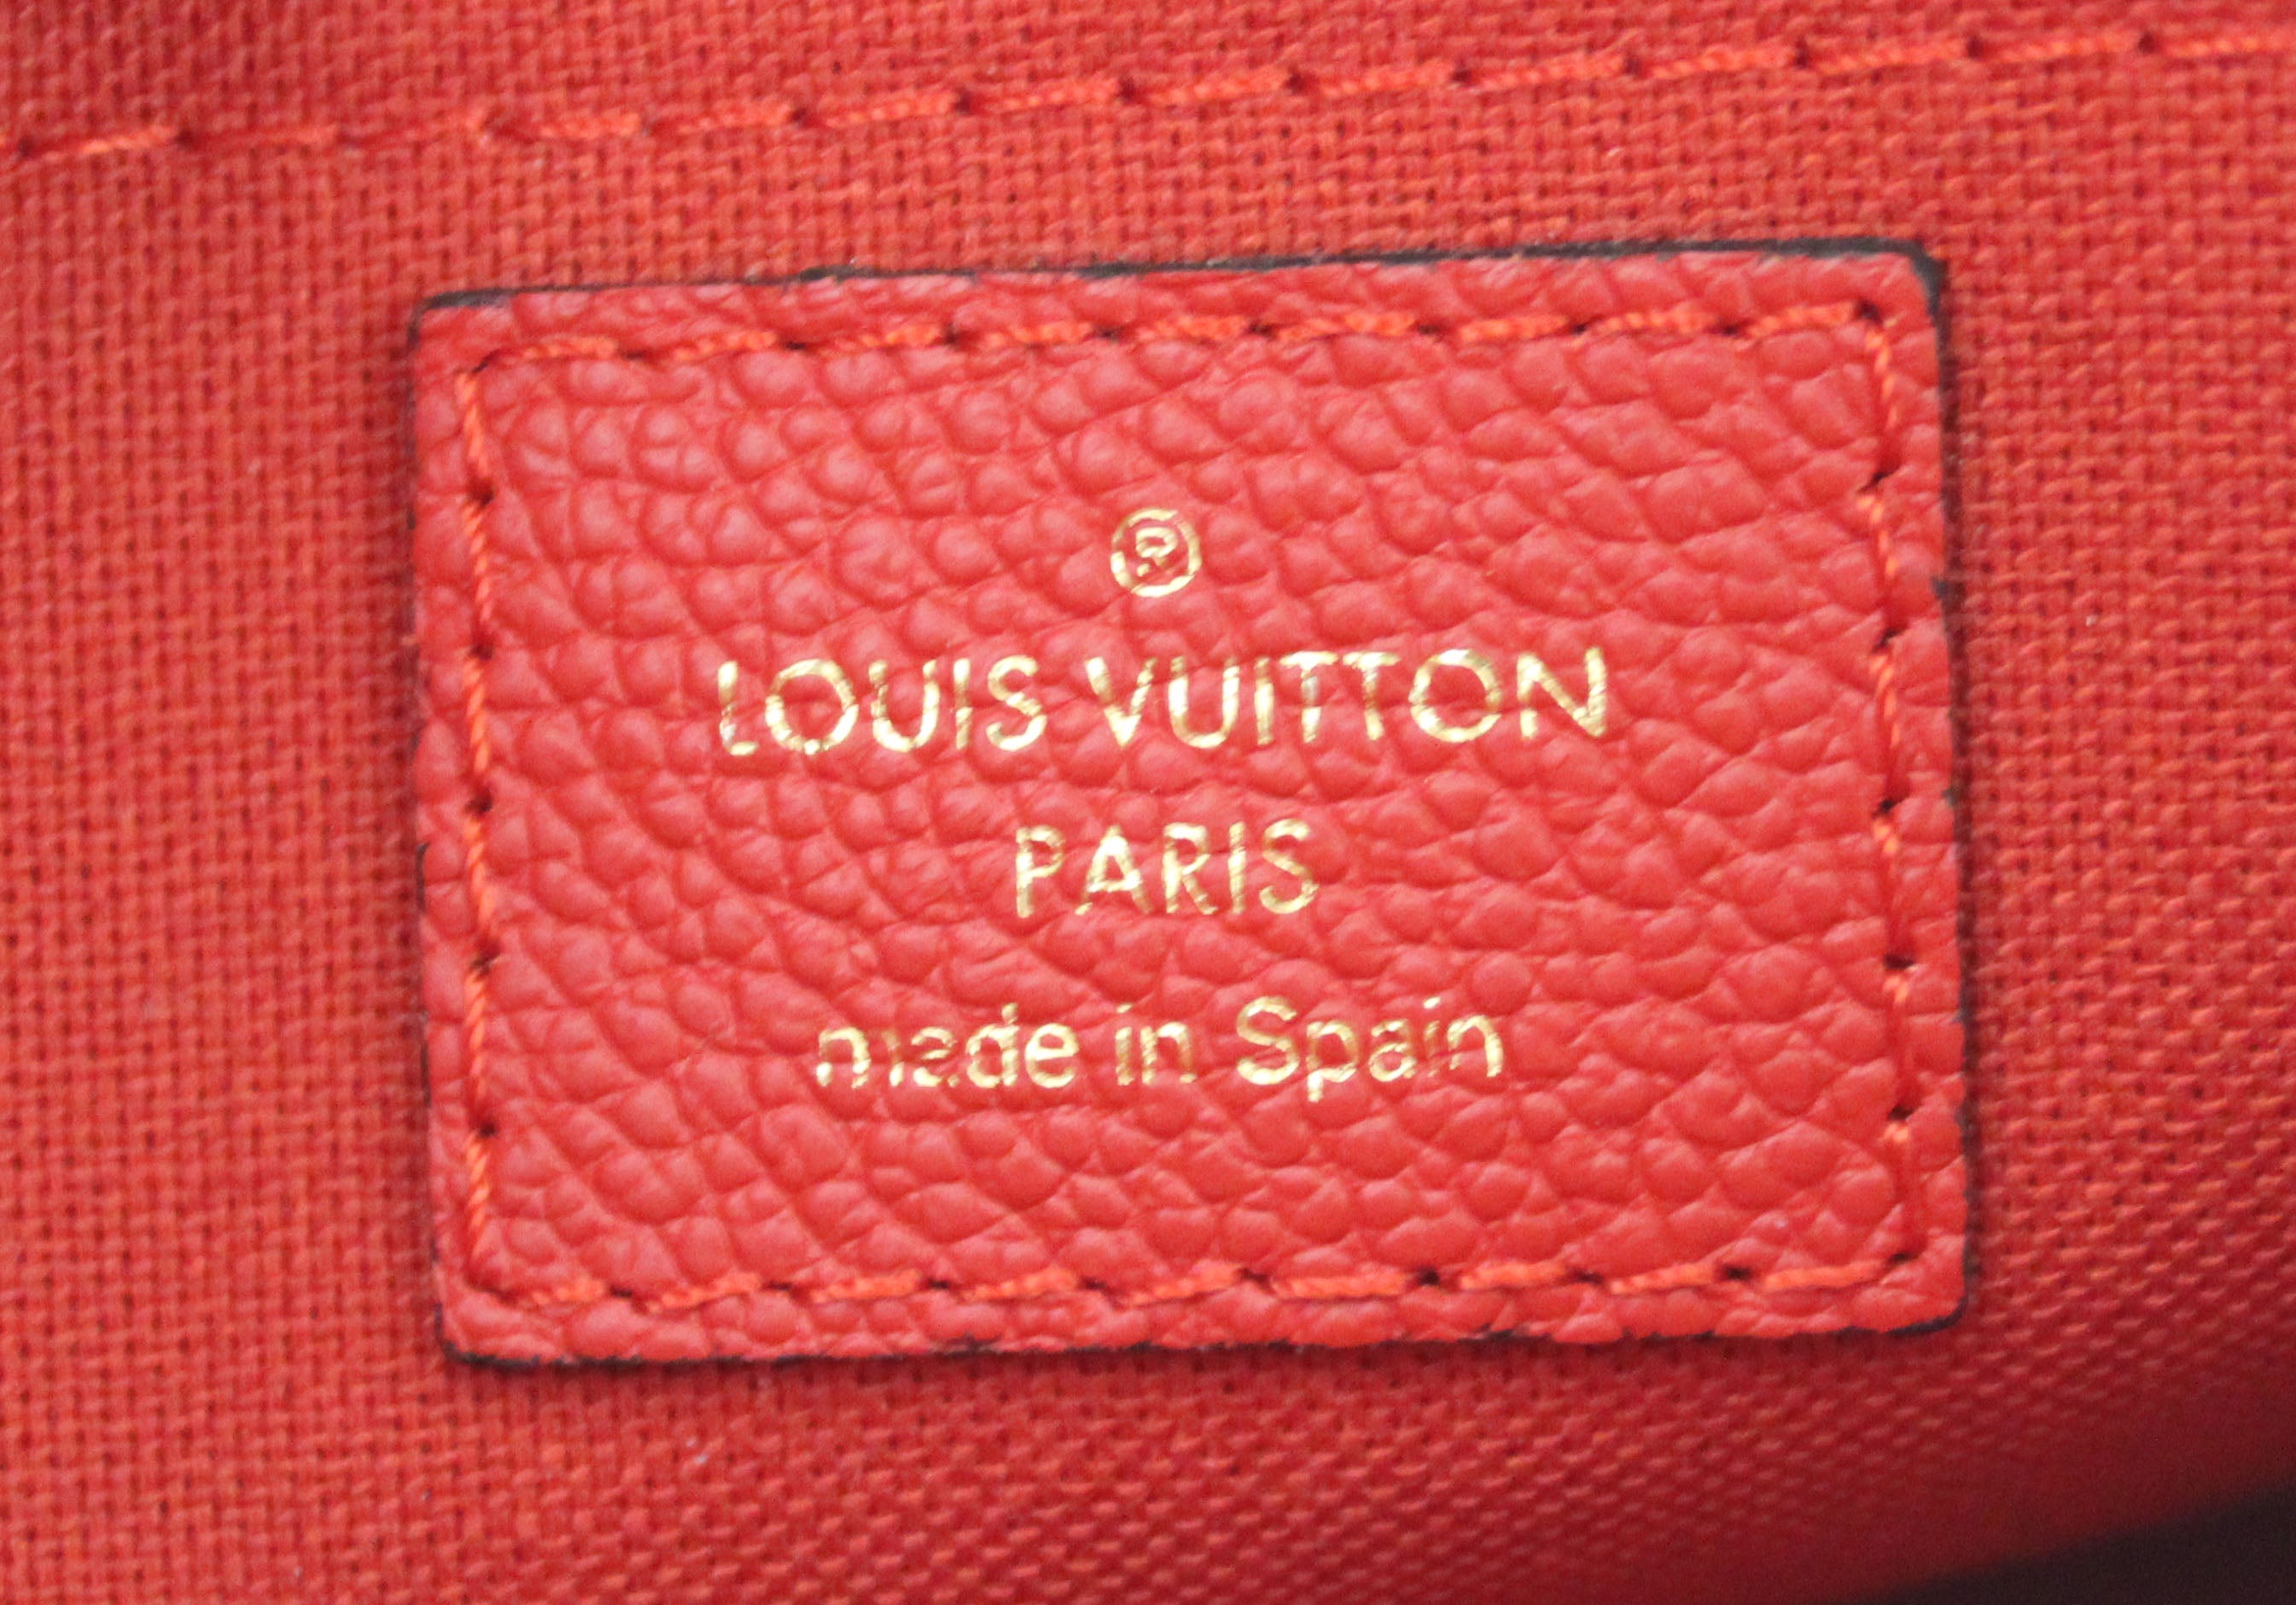 Louis Vuitton Red Monogram Canvas Pallas Clutch QJBCZC5VRB024